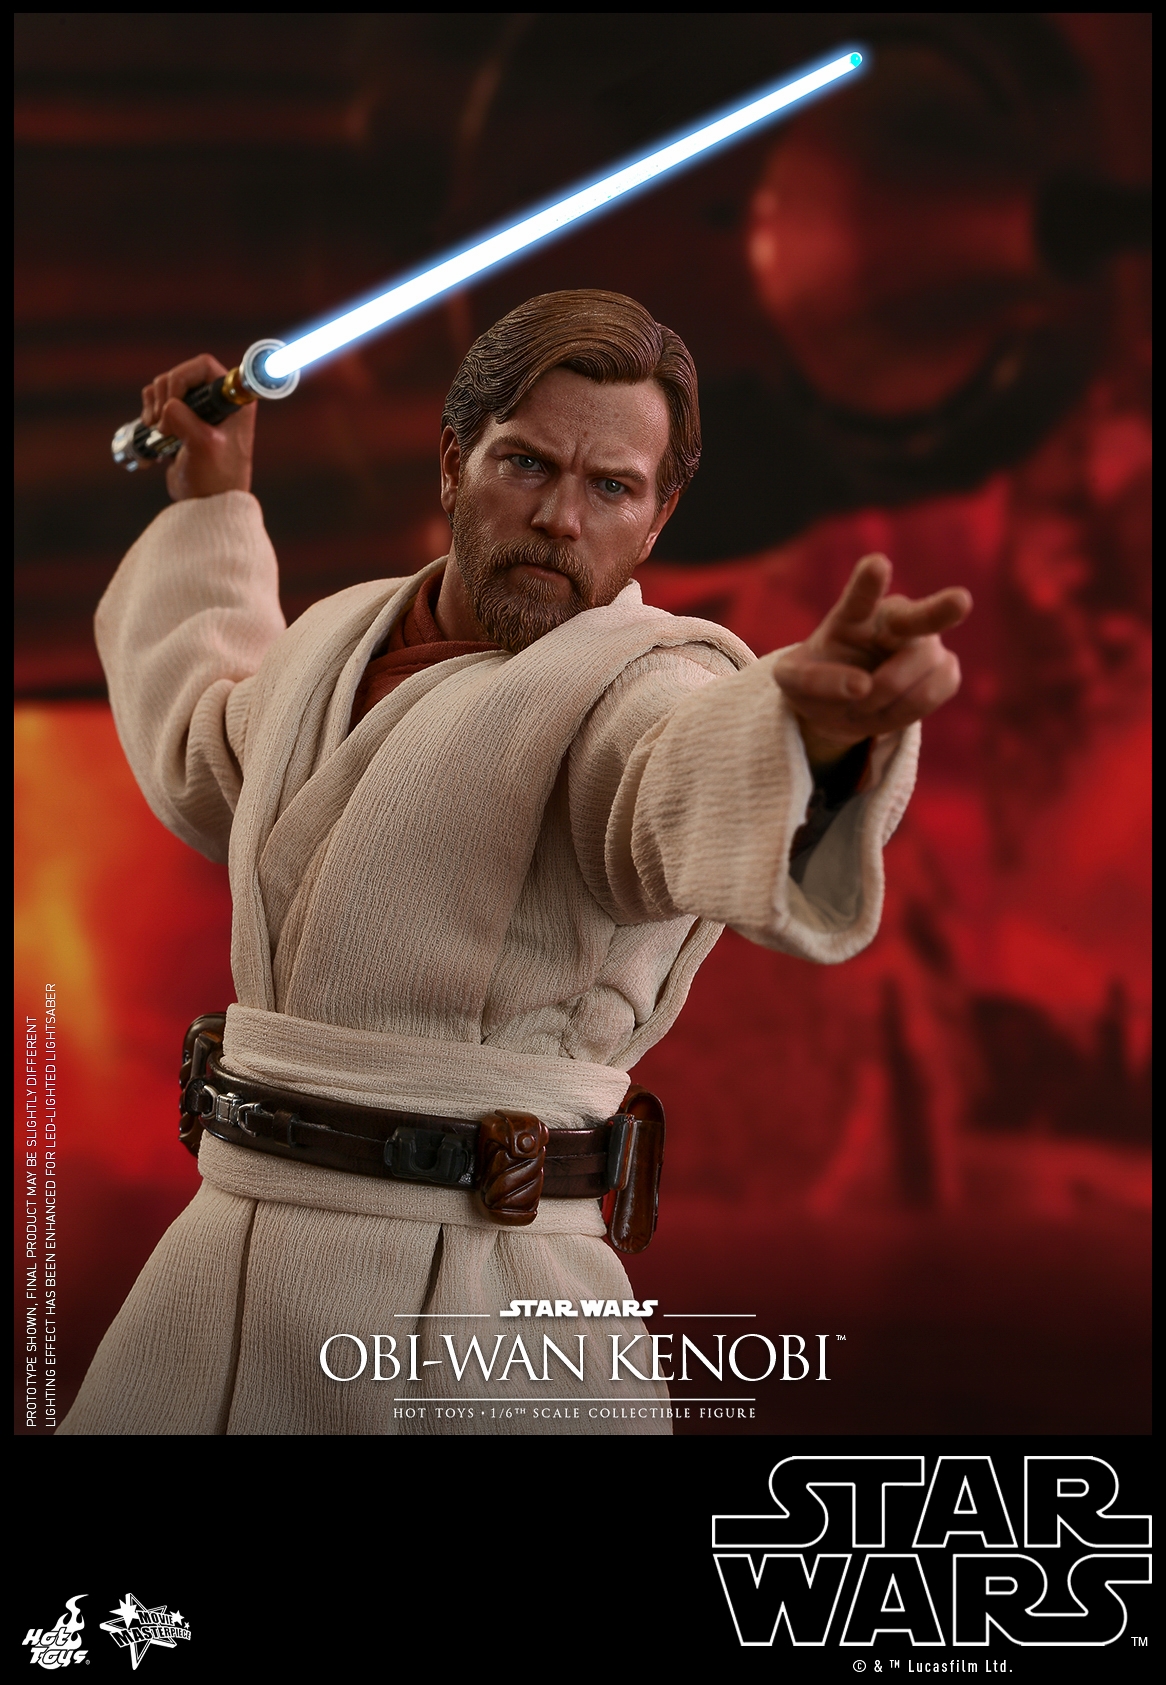 Hot-Toys-MMS477-Revenge-of-the-Sith-Obi-Wan-Kenobi-010.jpg